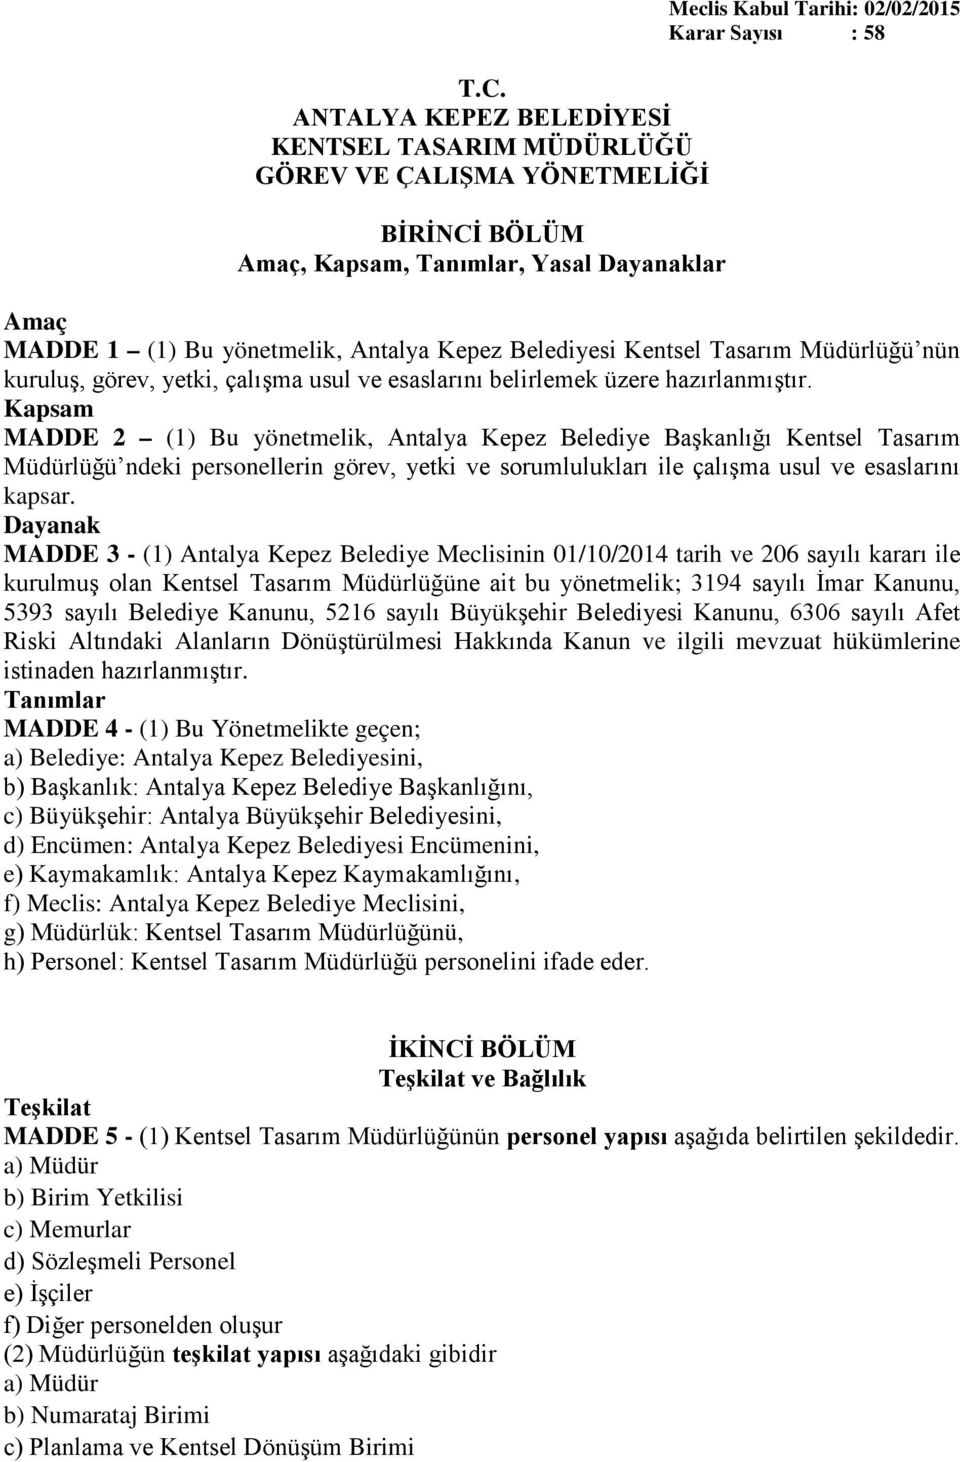 Kapsam MADDE 2 (1) Bu yönetmelik, Antalya Kepez Belediye Başkanlığı Kentsel Tasarım Müdürlüğü ndeki personellerin görev, yetki ve sorumlulukları ile çalışma usul ve esaslarını kapsar.